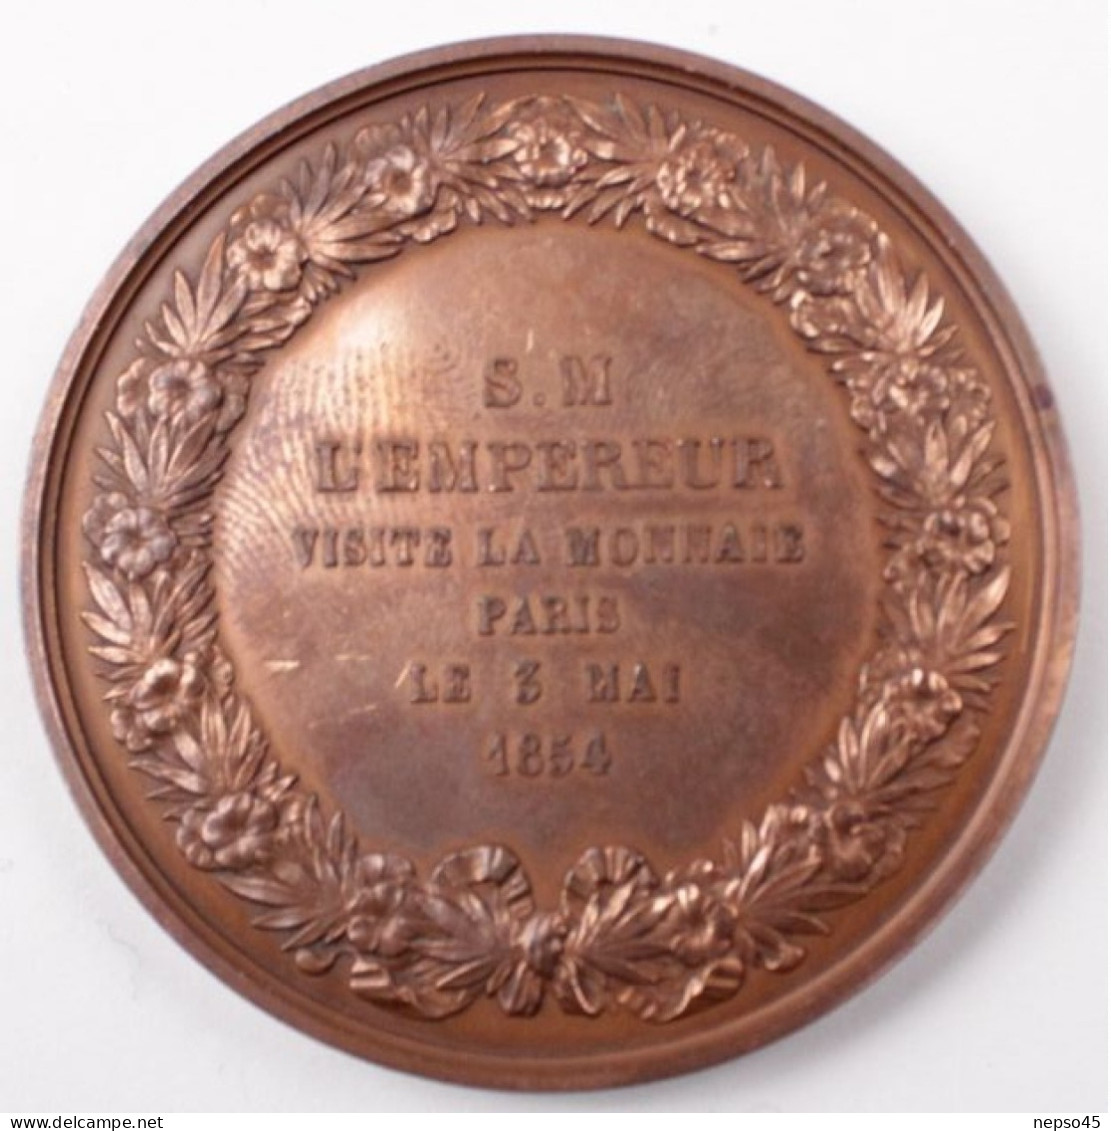 Médaille De Table Commémorative.Bronze.Empereur Napoléon III Visite La Monnaie.Paris 3 Mai 1854. - Royal / Of Nobility